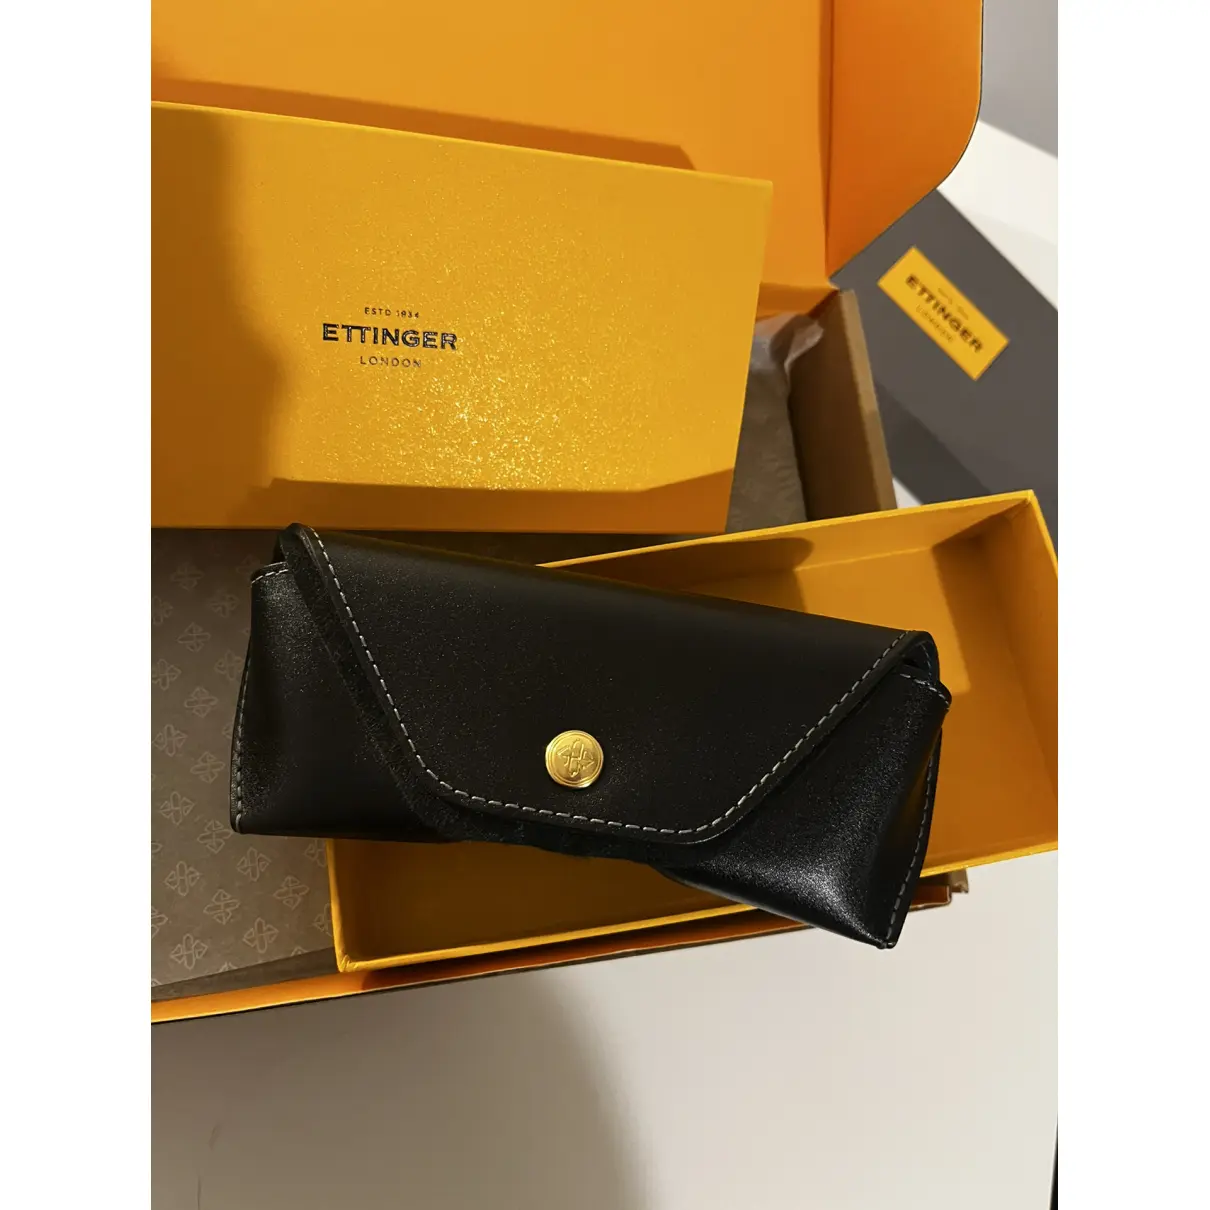 Buy Ettinger Leather small bag online